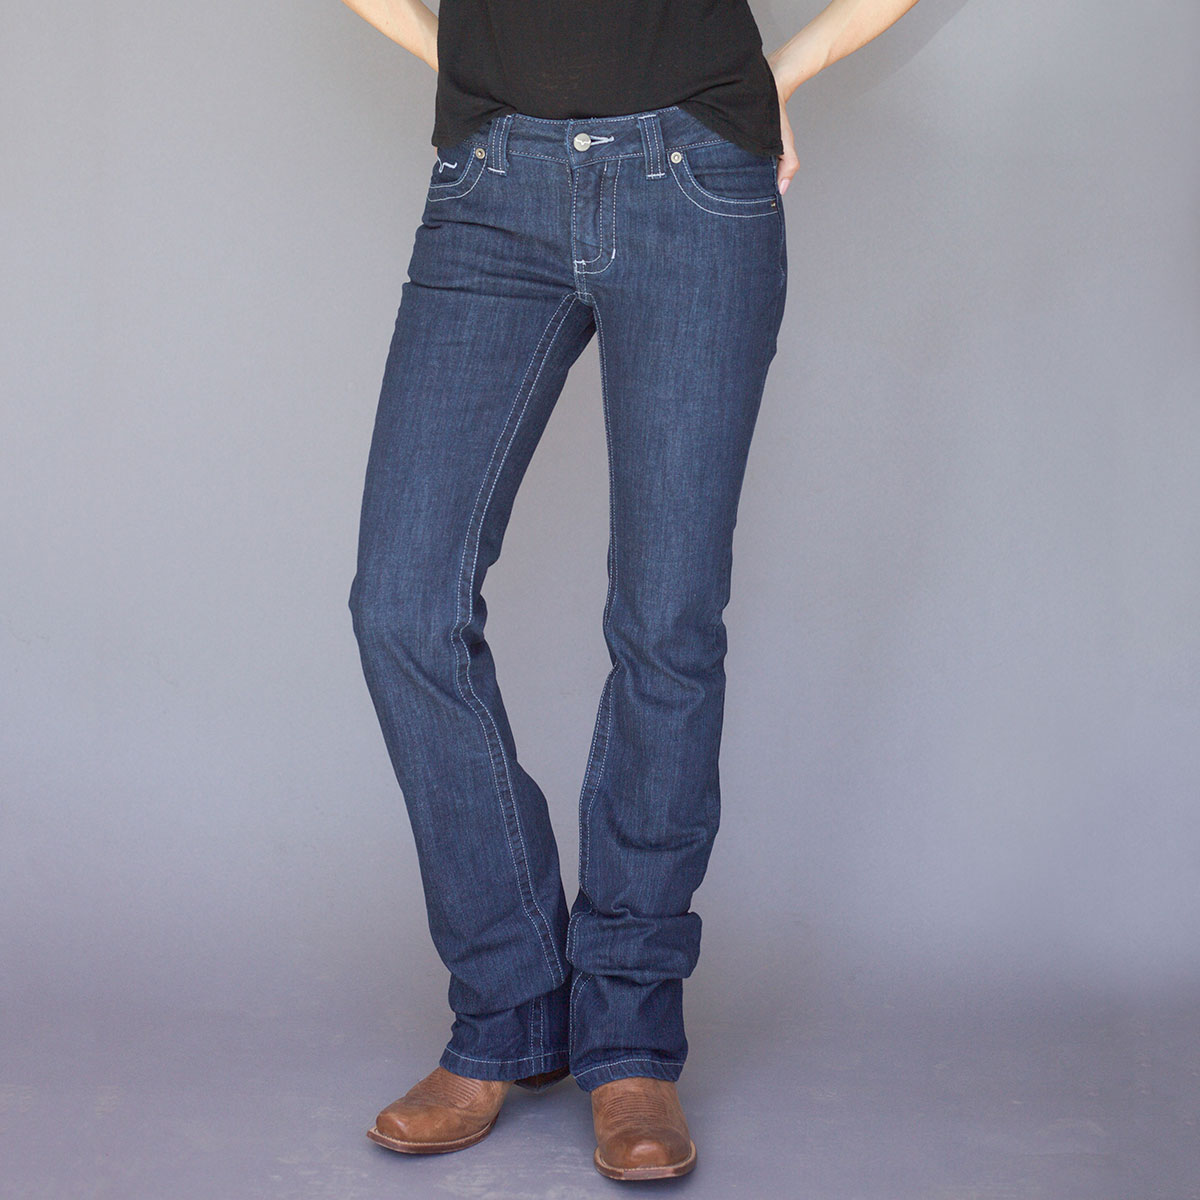 kimes ranch women's jeans